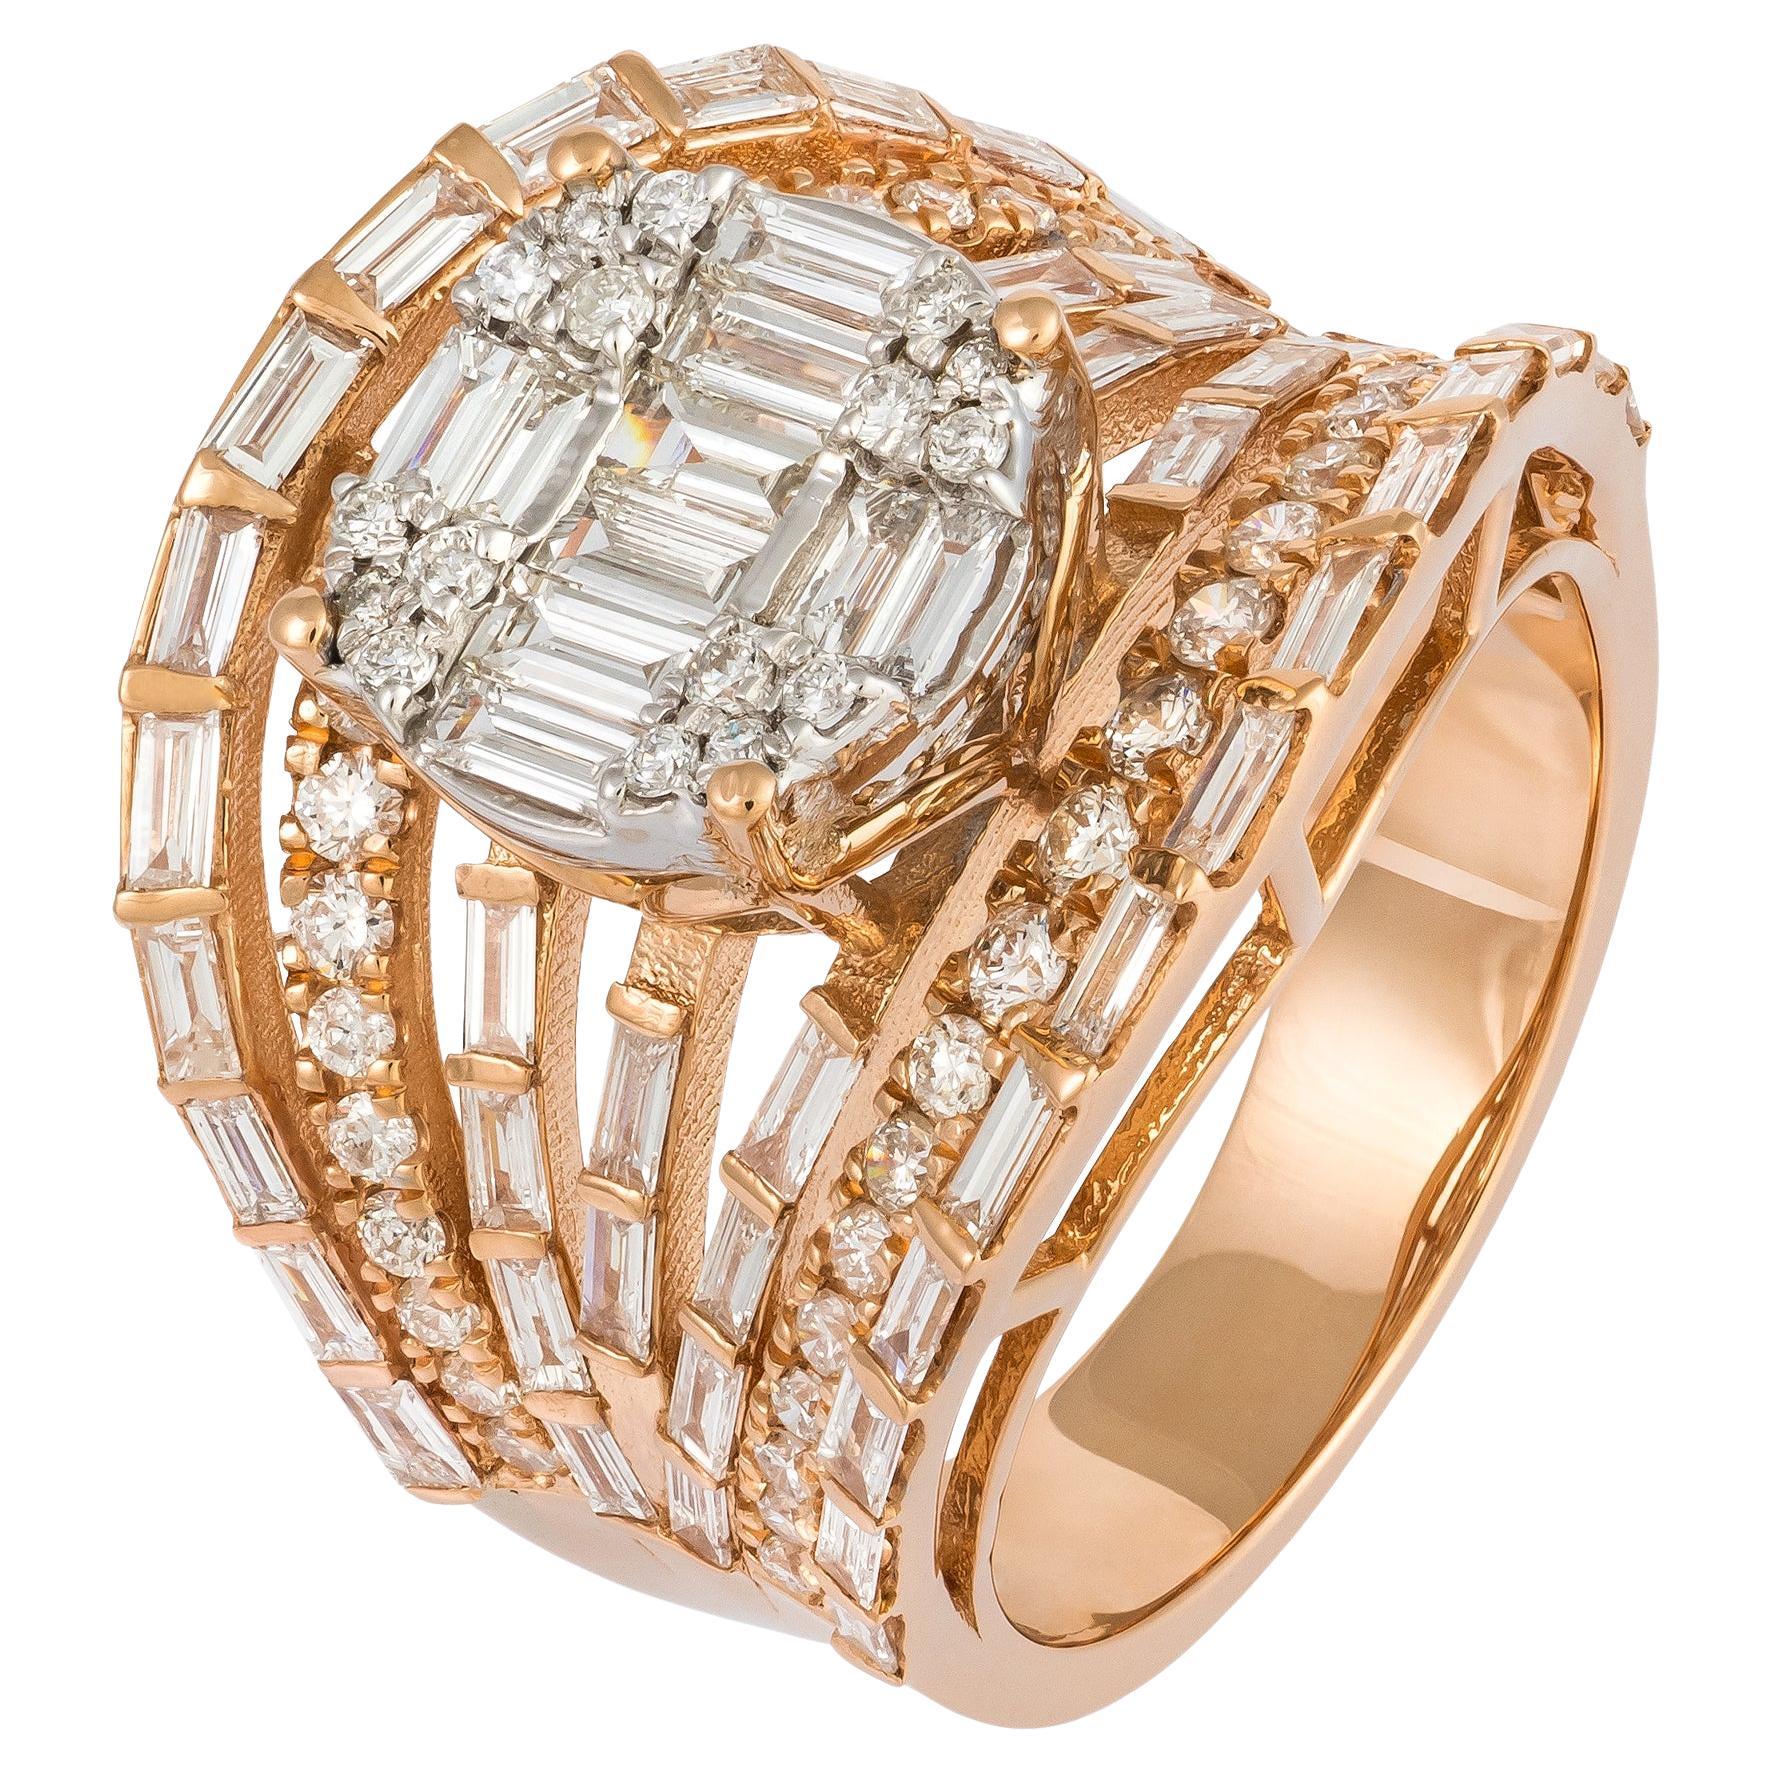 Impressive White Pink 18K Gold White Diamond Ring For Her